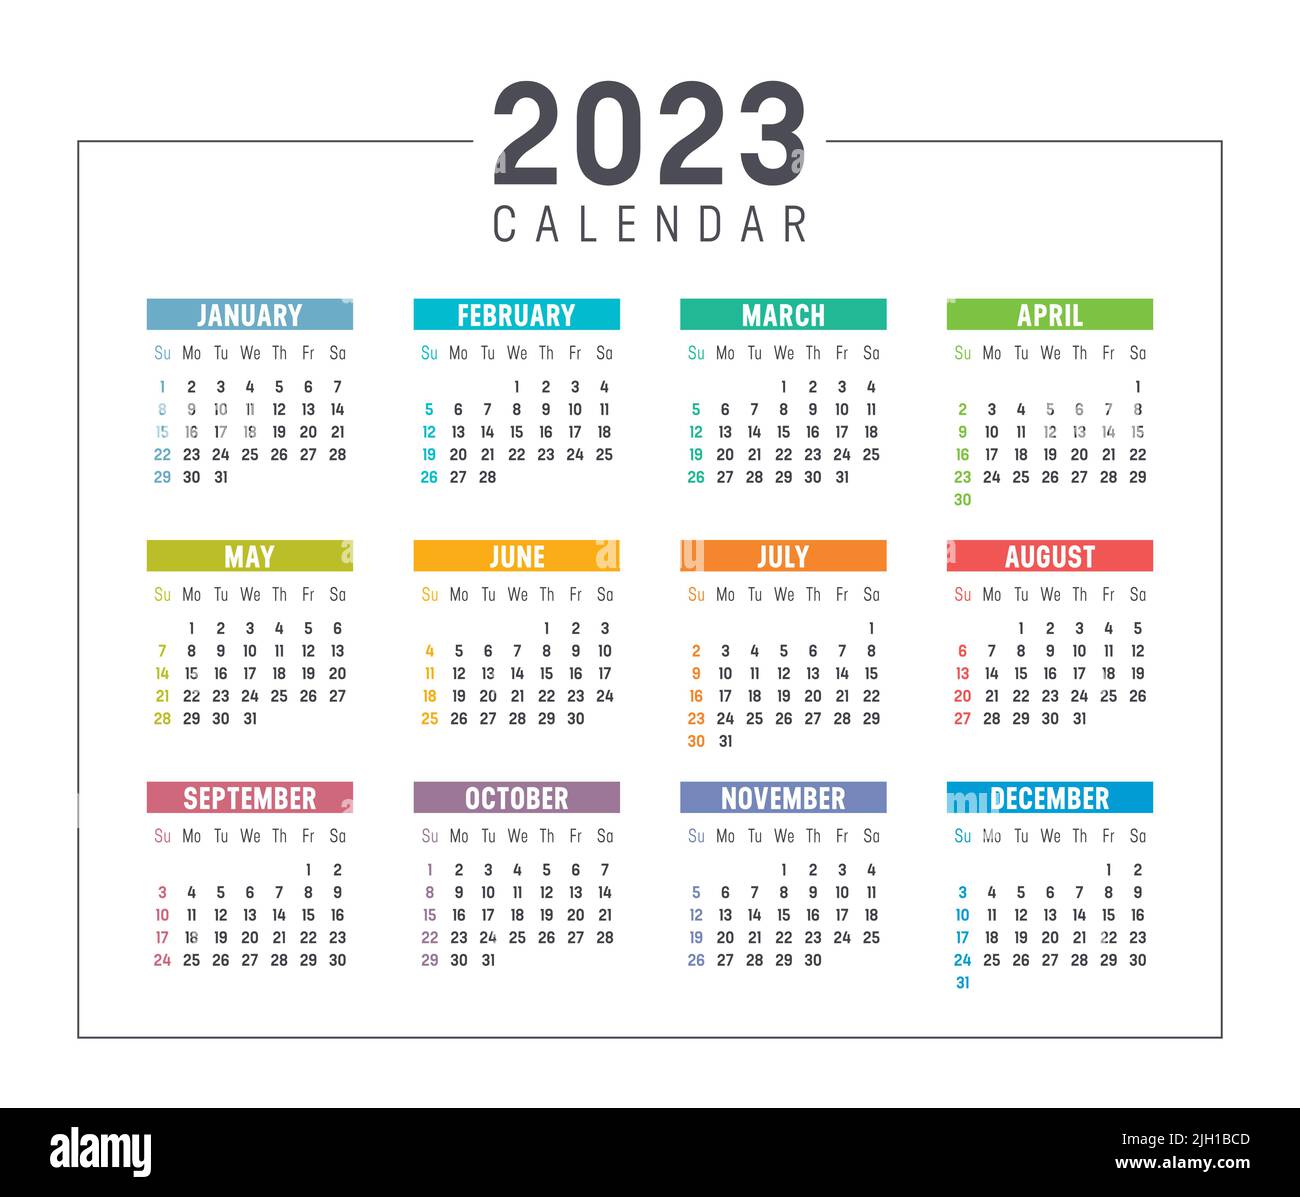 Farbenfroher Jahreskalender 2023 auf weißem Hintergrund isoliert. Die Woche beginnt am Sonntag. Vektorvorlage. Stock Vektor